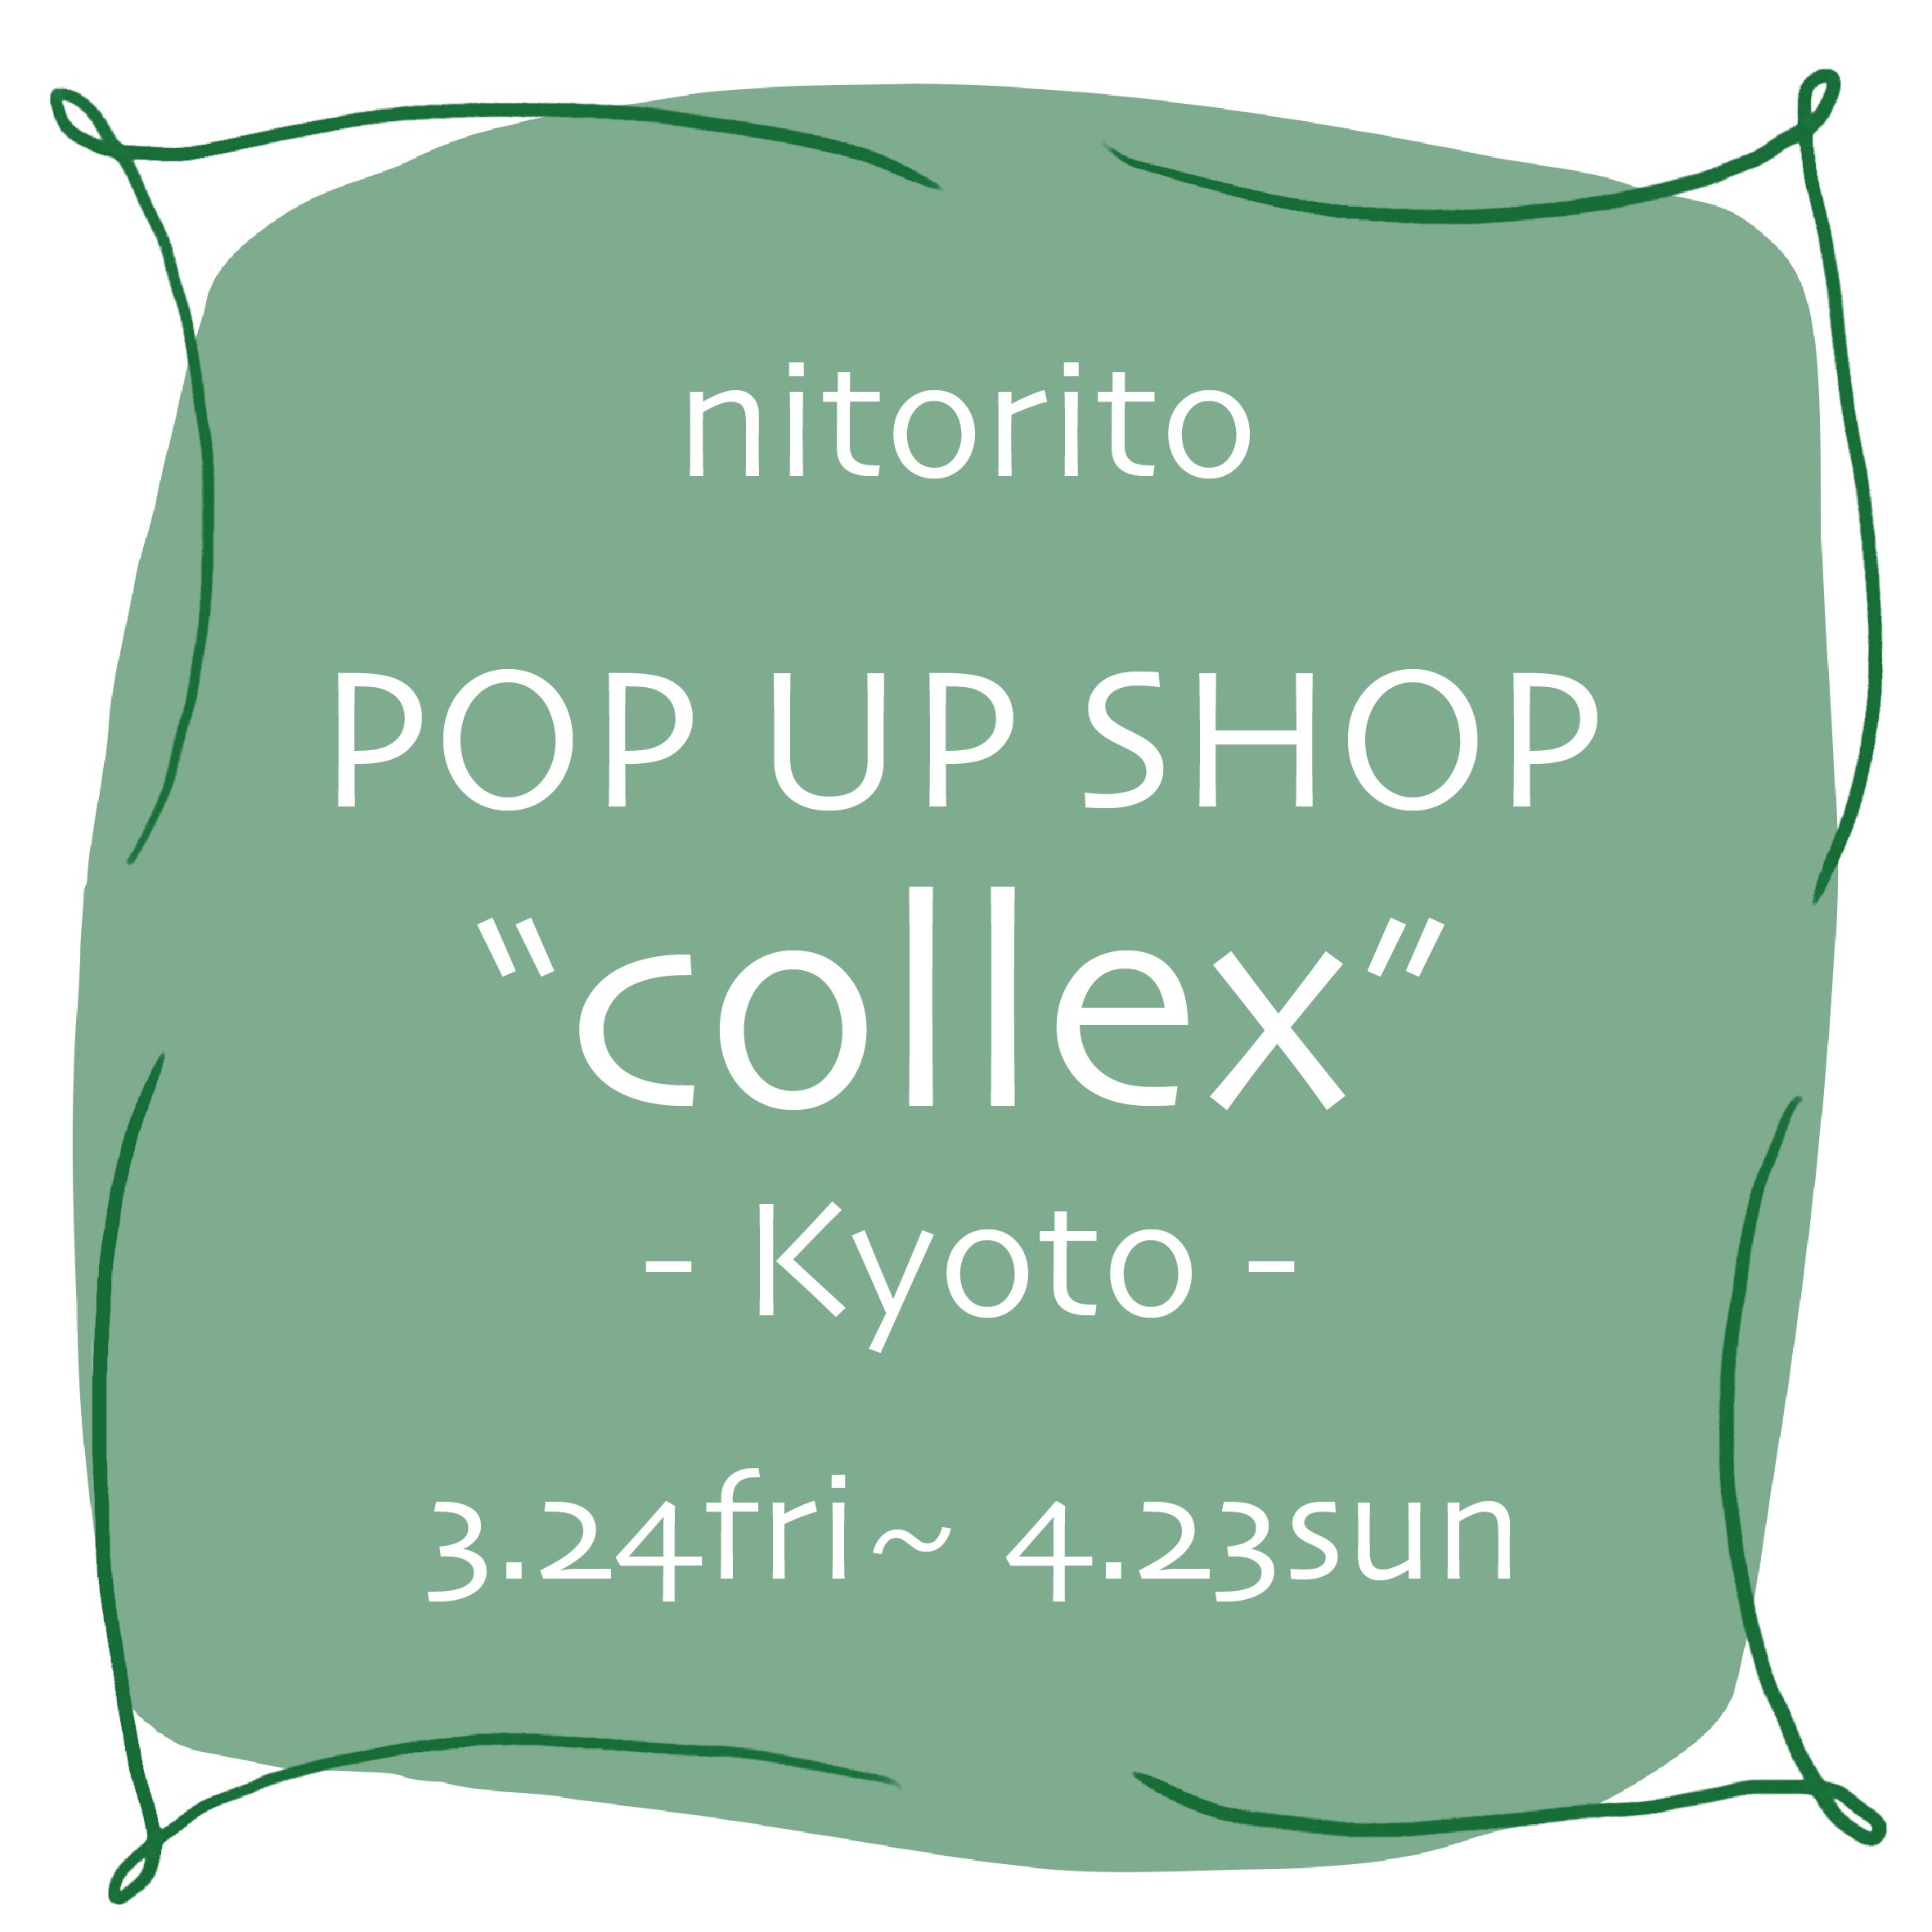 collex 京都店にてPOPUPSHOPを行います！